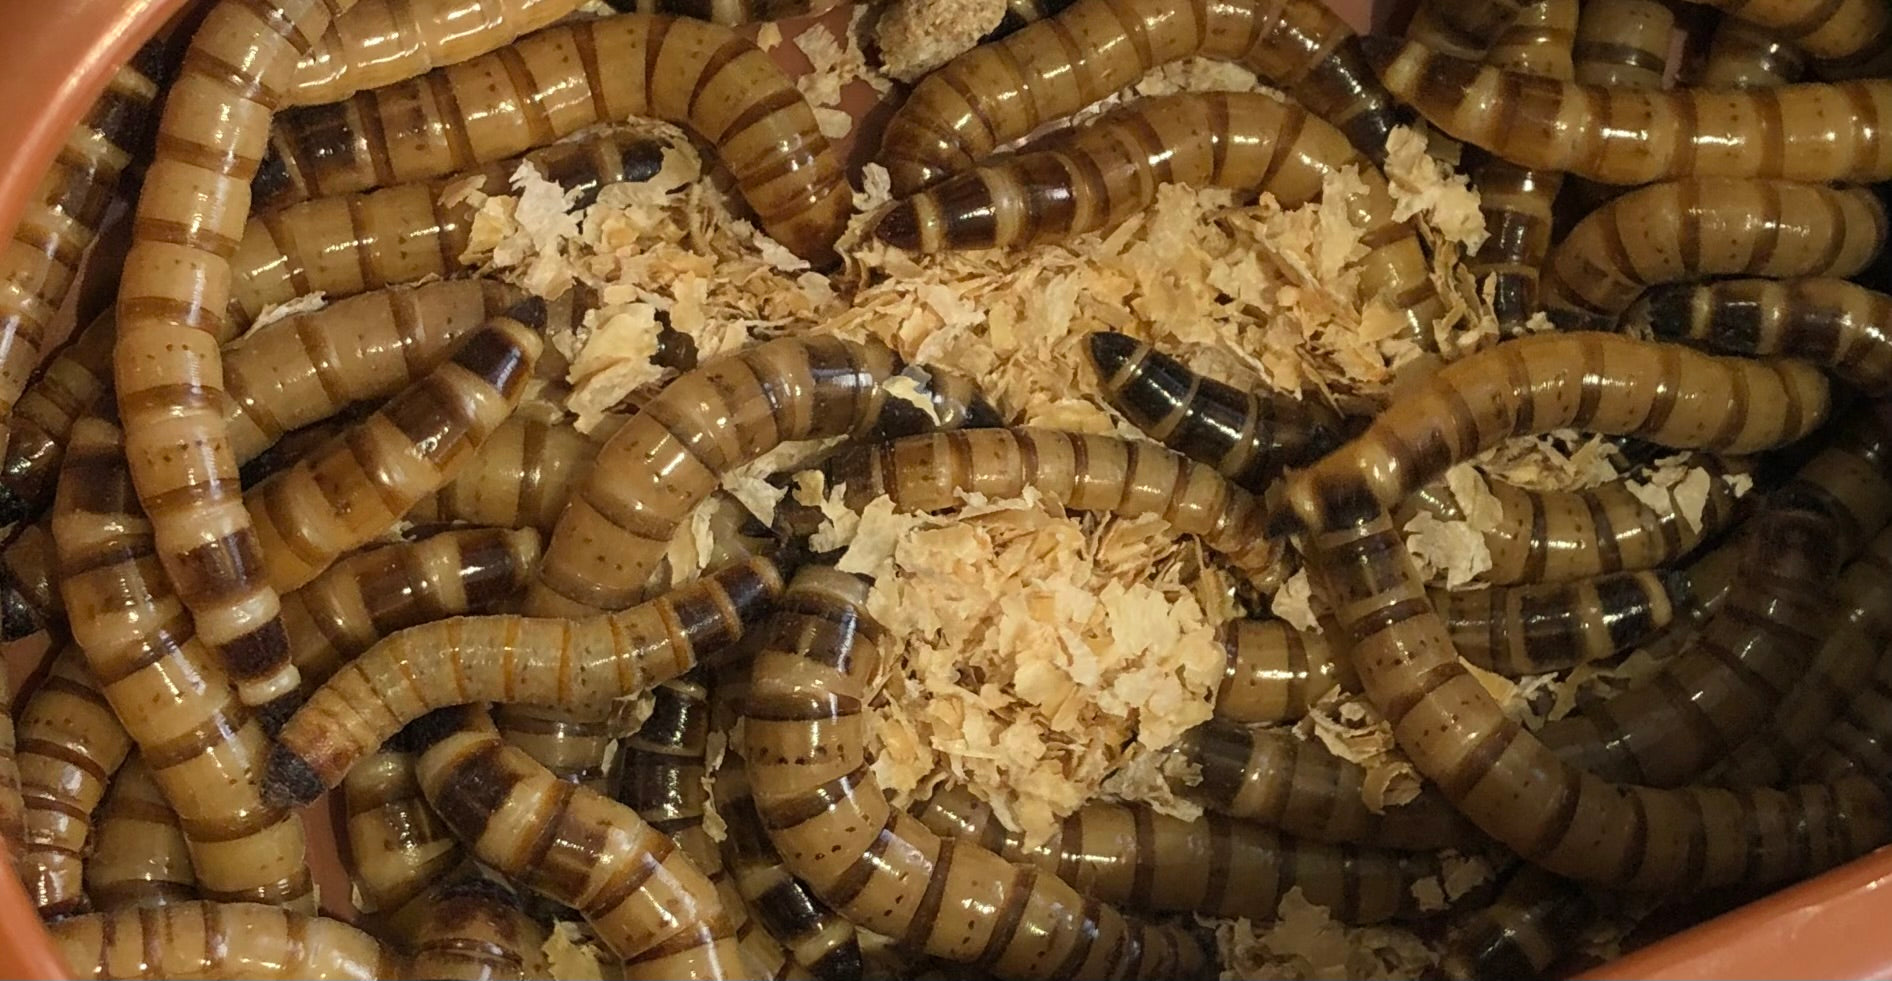 Giant Mealworms - Zophobas morio